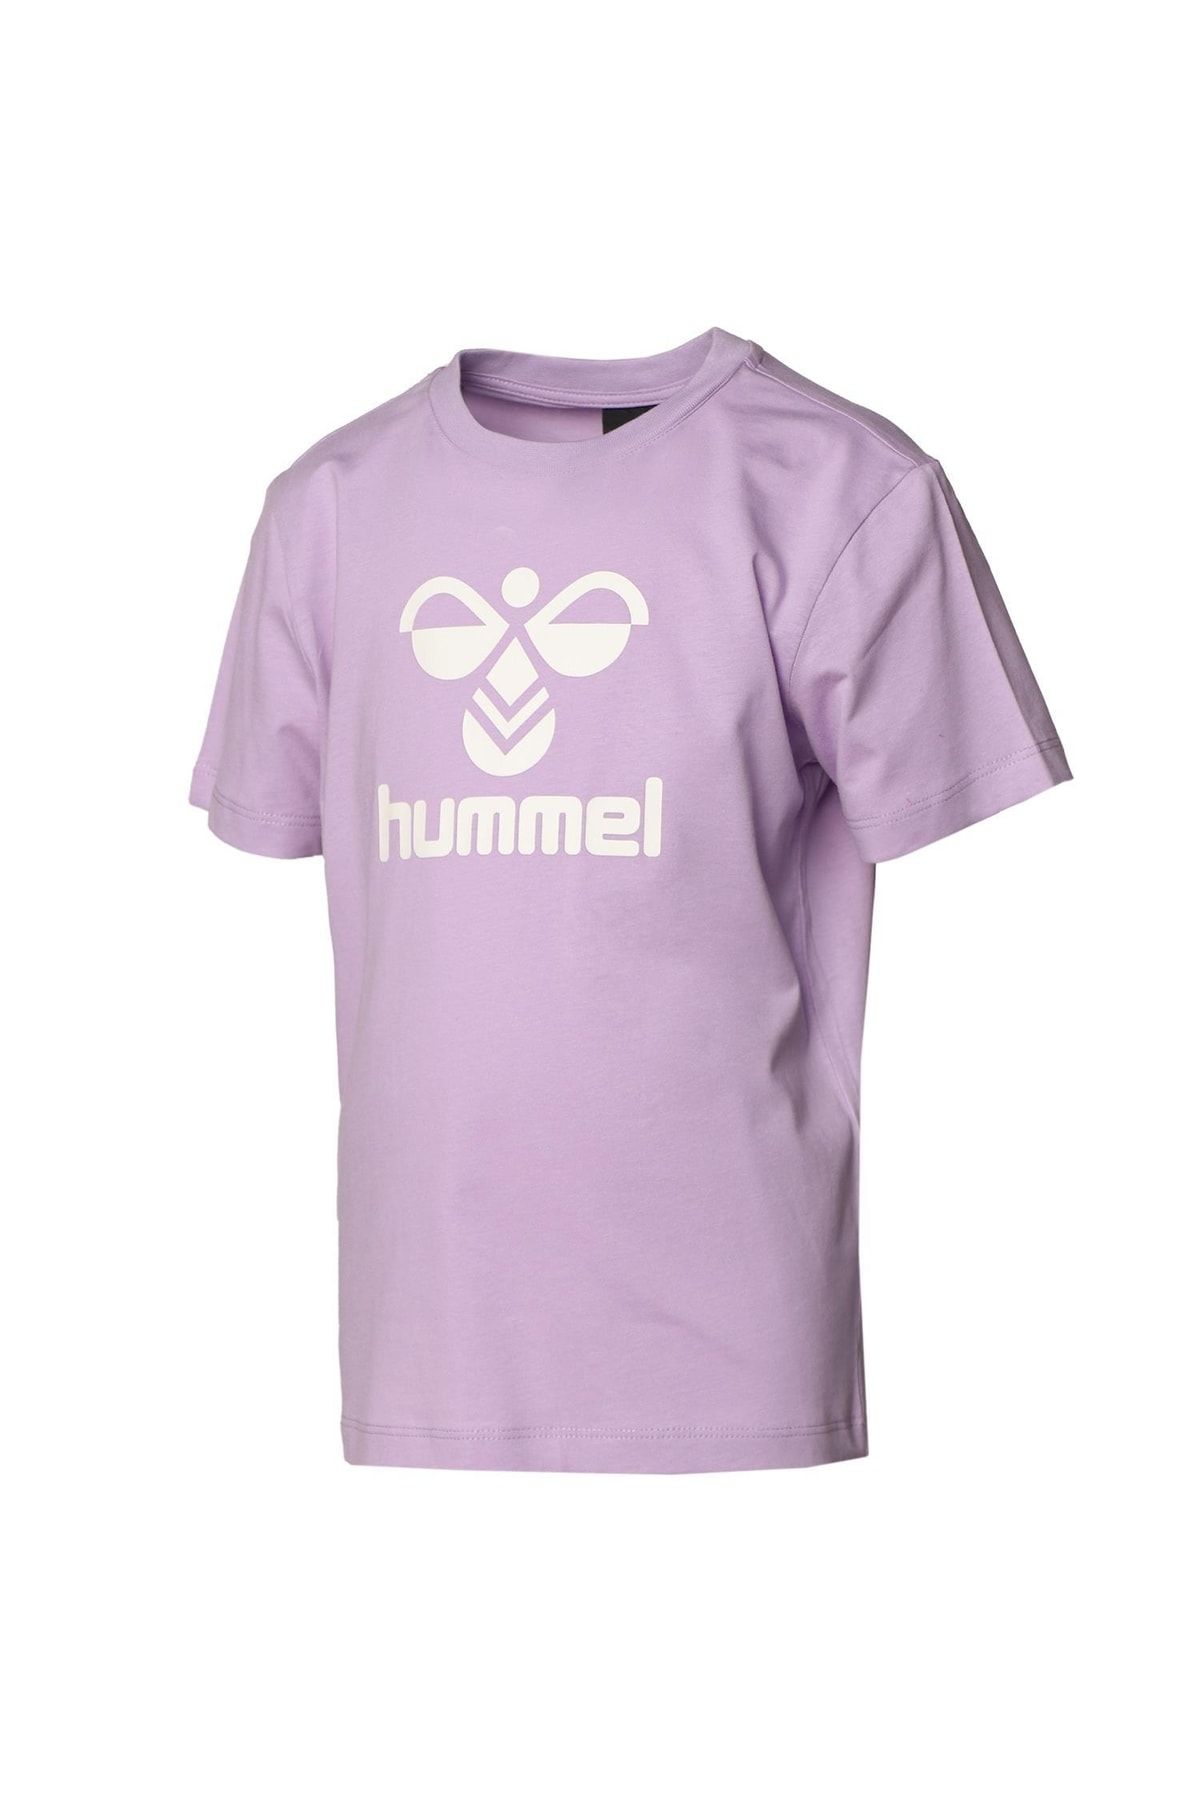 hummel 911653-2221 Lauren Çocuk T-shirt